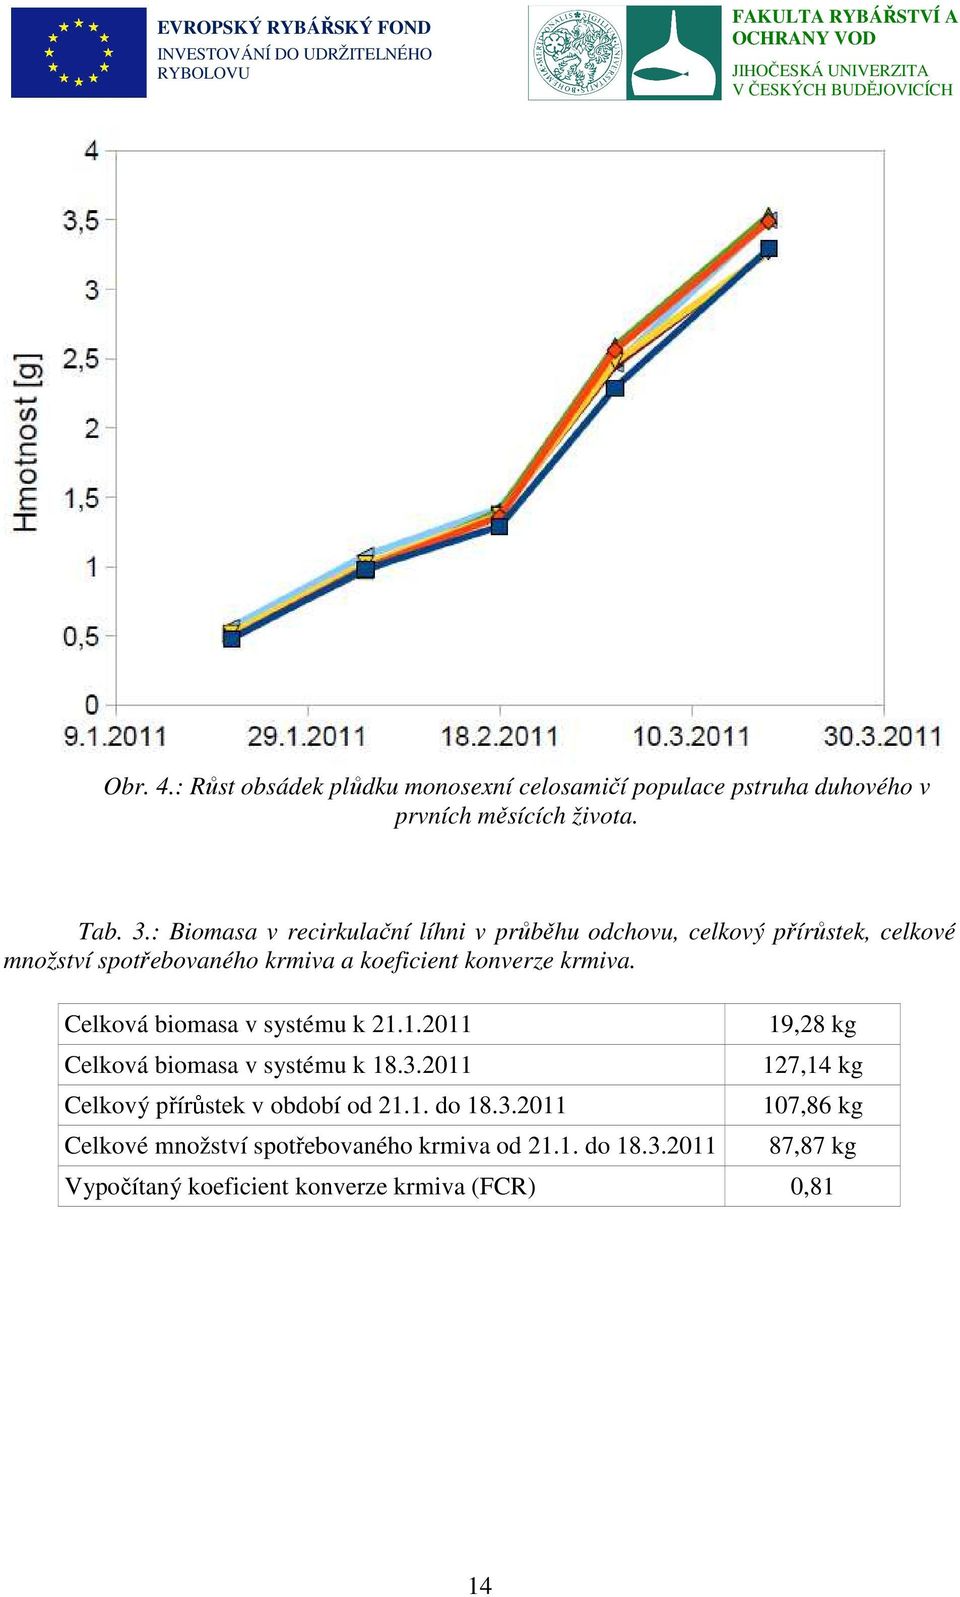 krmiva. Celková biomasa v systému k 21.1.2011 Celková biomasa v systému k 18.3.2011 Celkový přírůstek v období od 21.1. do 18.3.2011 Celkové množství spotřebovaného krmiva od 21.